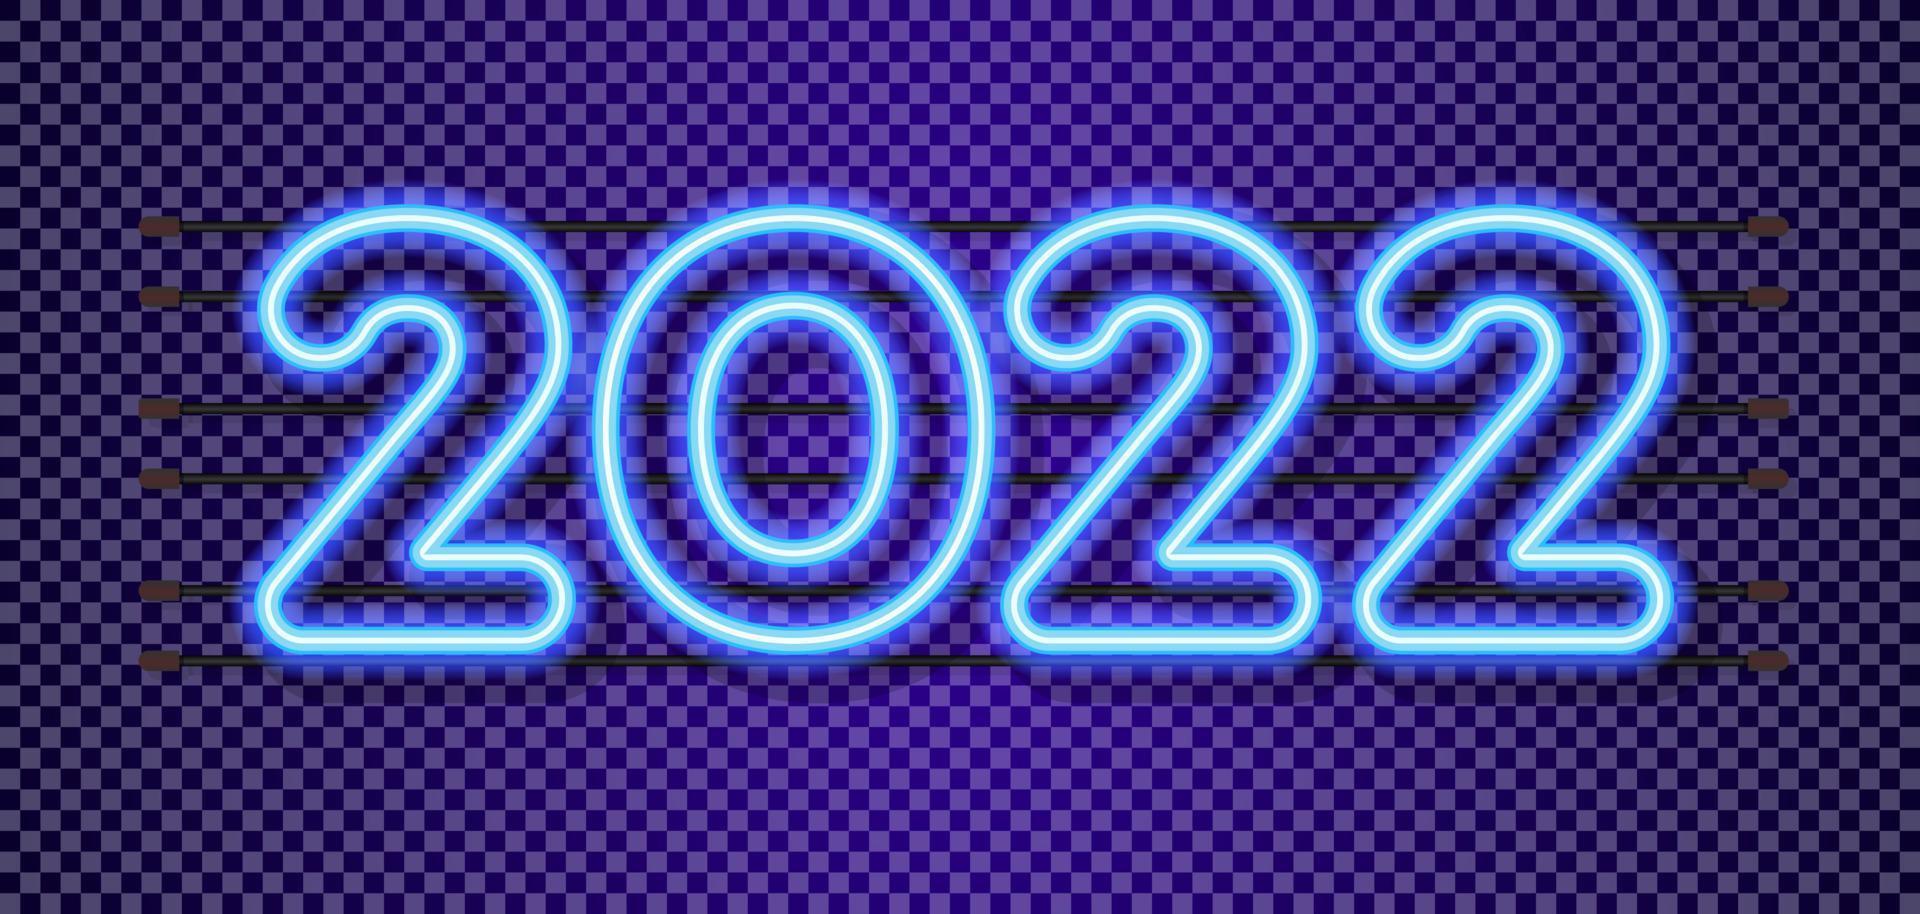 2022 zeichen neonstil auf transparentem hintergrund vektor